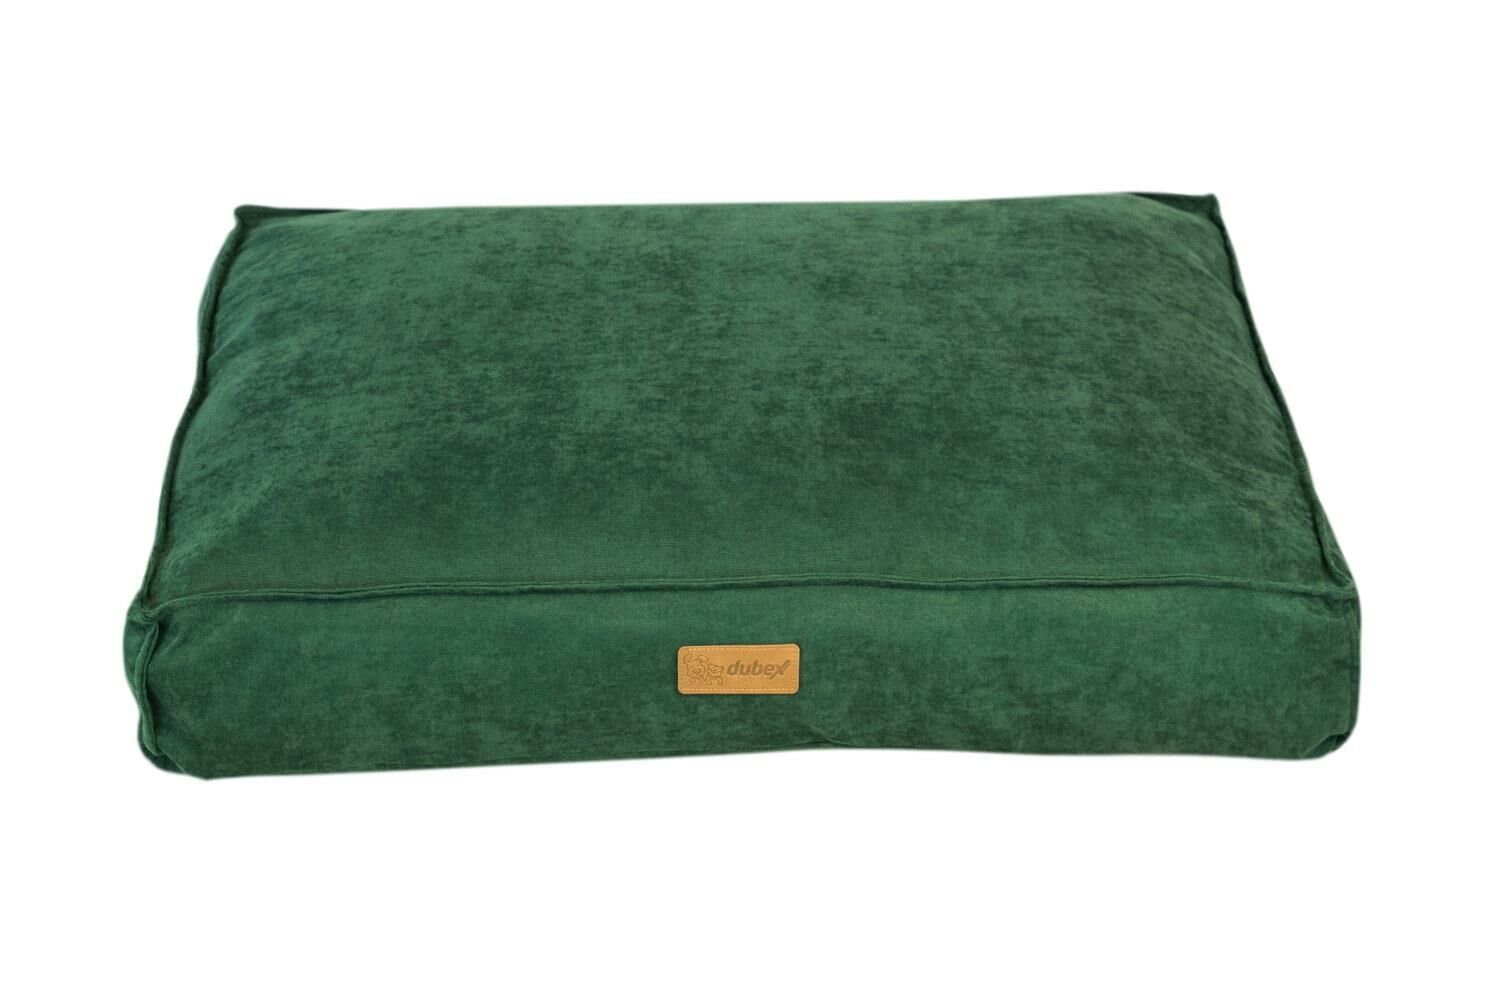 Dubex Plus Soft Serisi Kedi Köpek Yatağı Yeşil Medium 76x56x13 cm